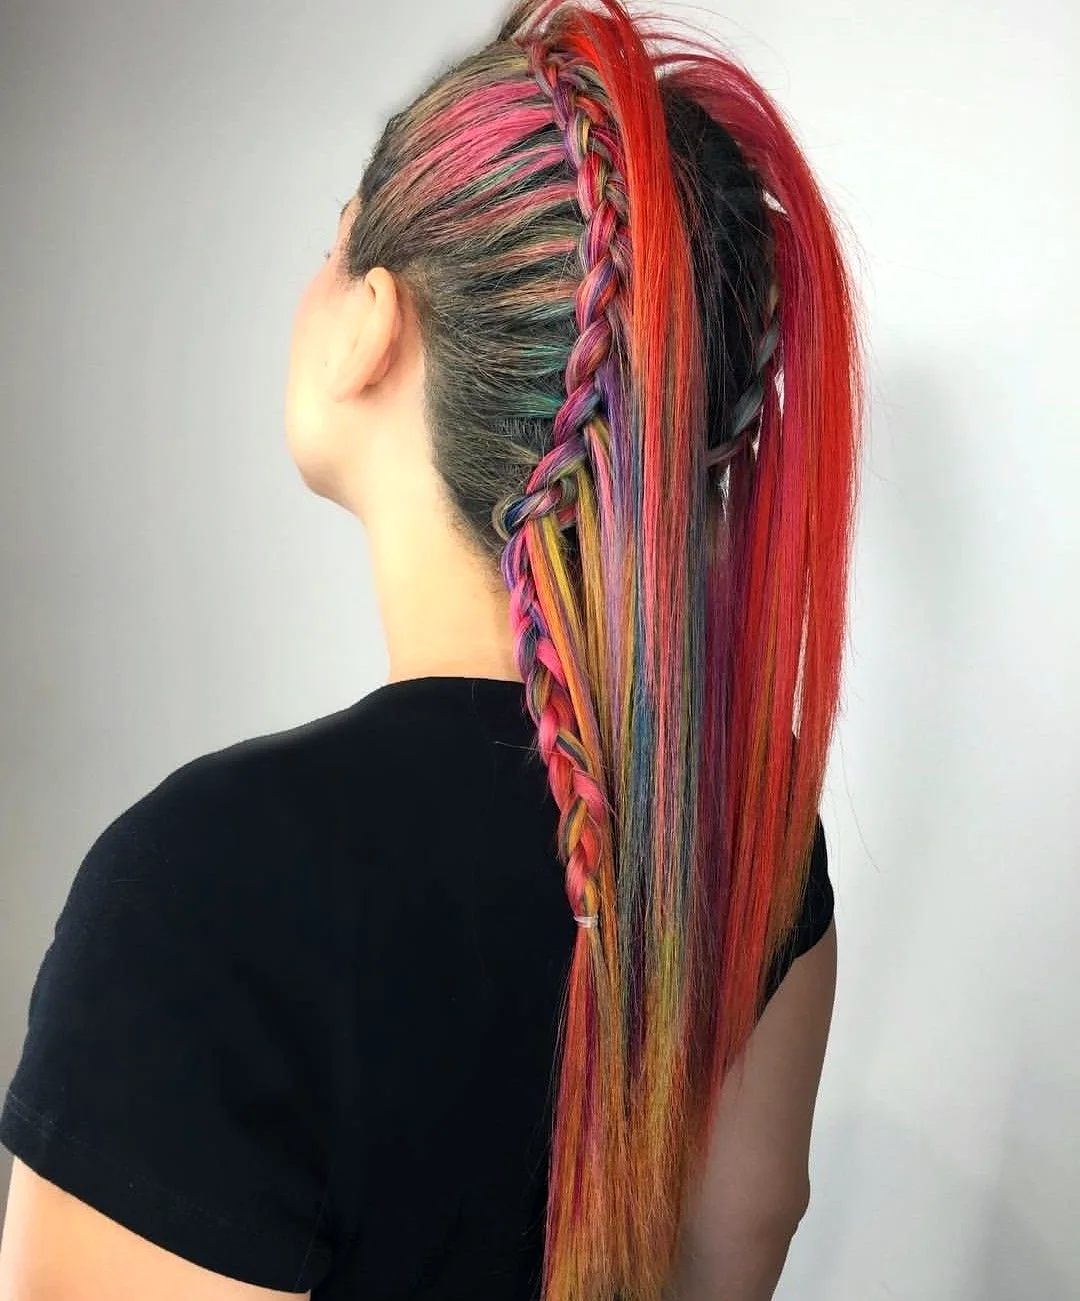 Вплести цветные пряди в волосы